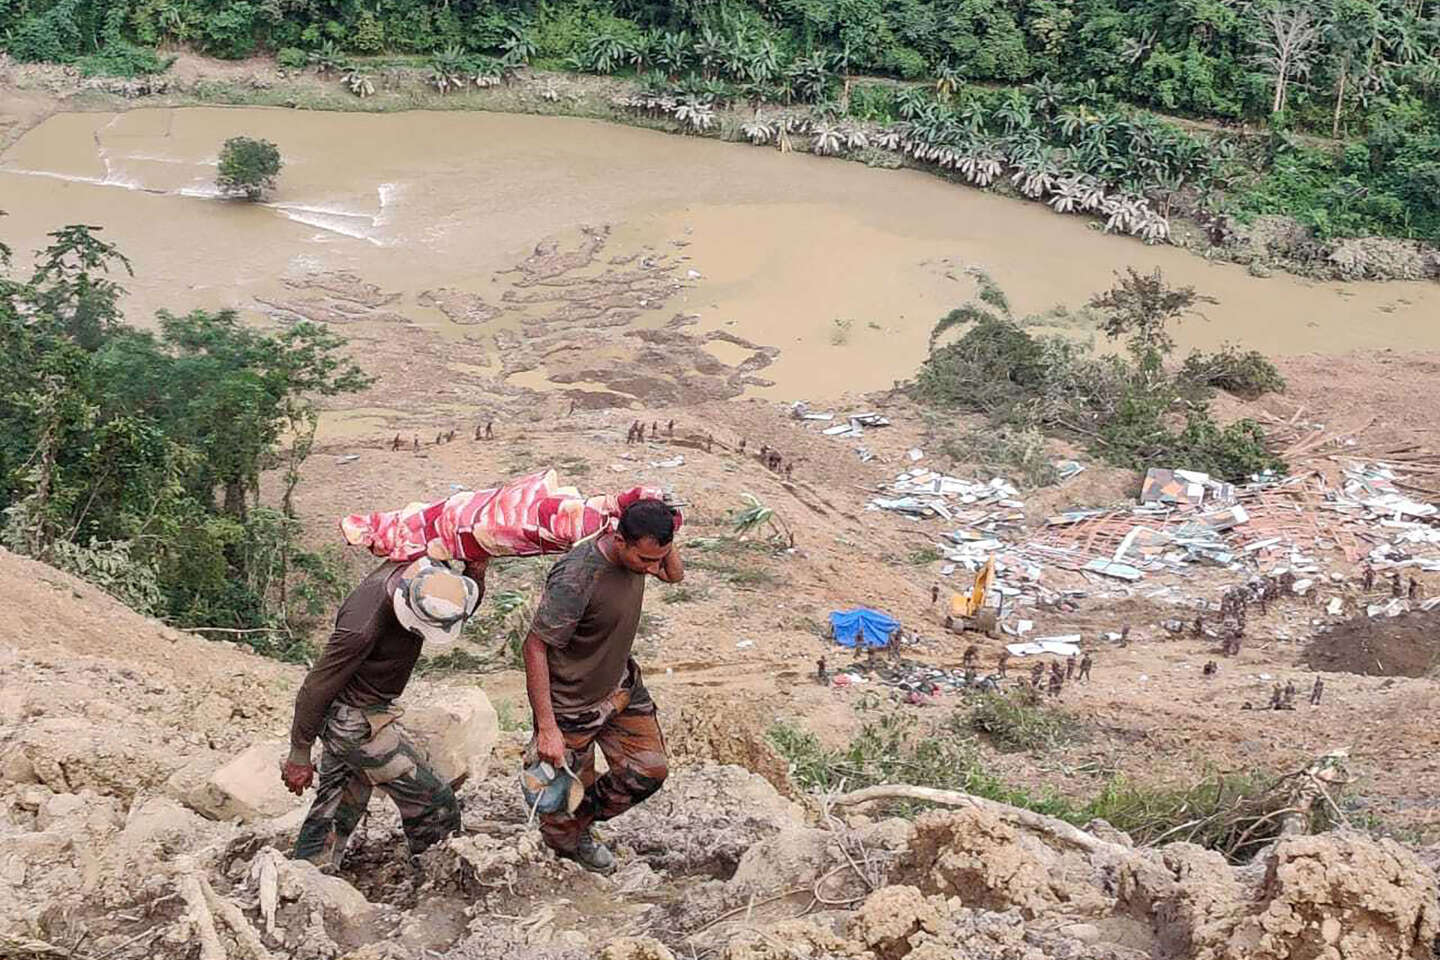 In India, landslides leave dozens dead and missing